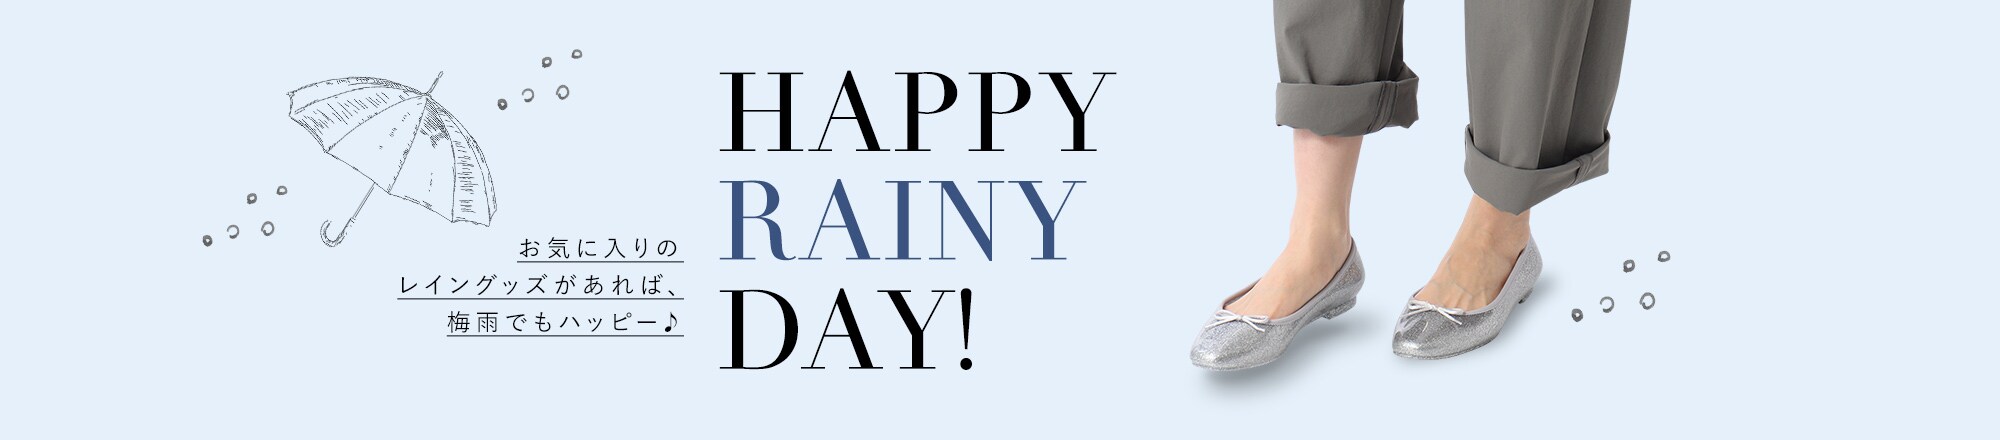 HAPPY RAINY DAY！ お気に入りのレイングッズがあれば、梅雨でもハッピー♪